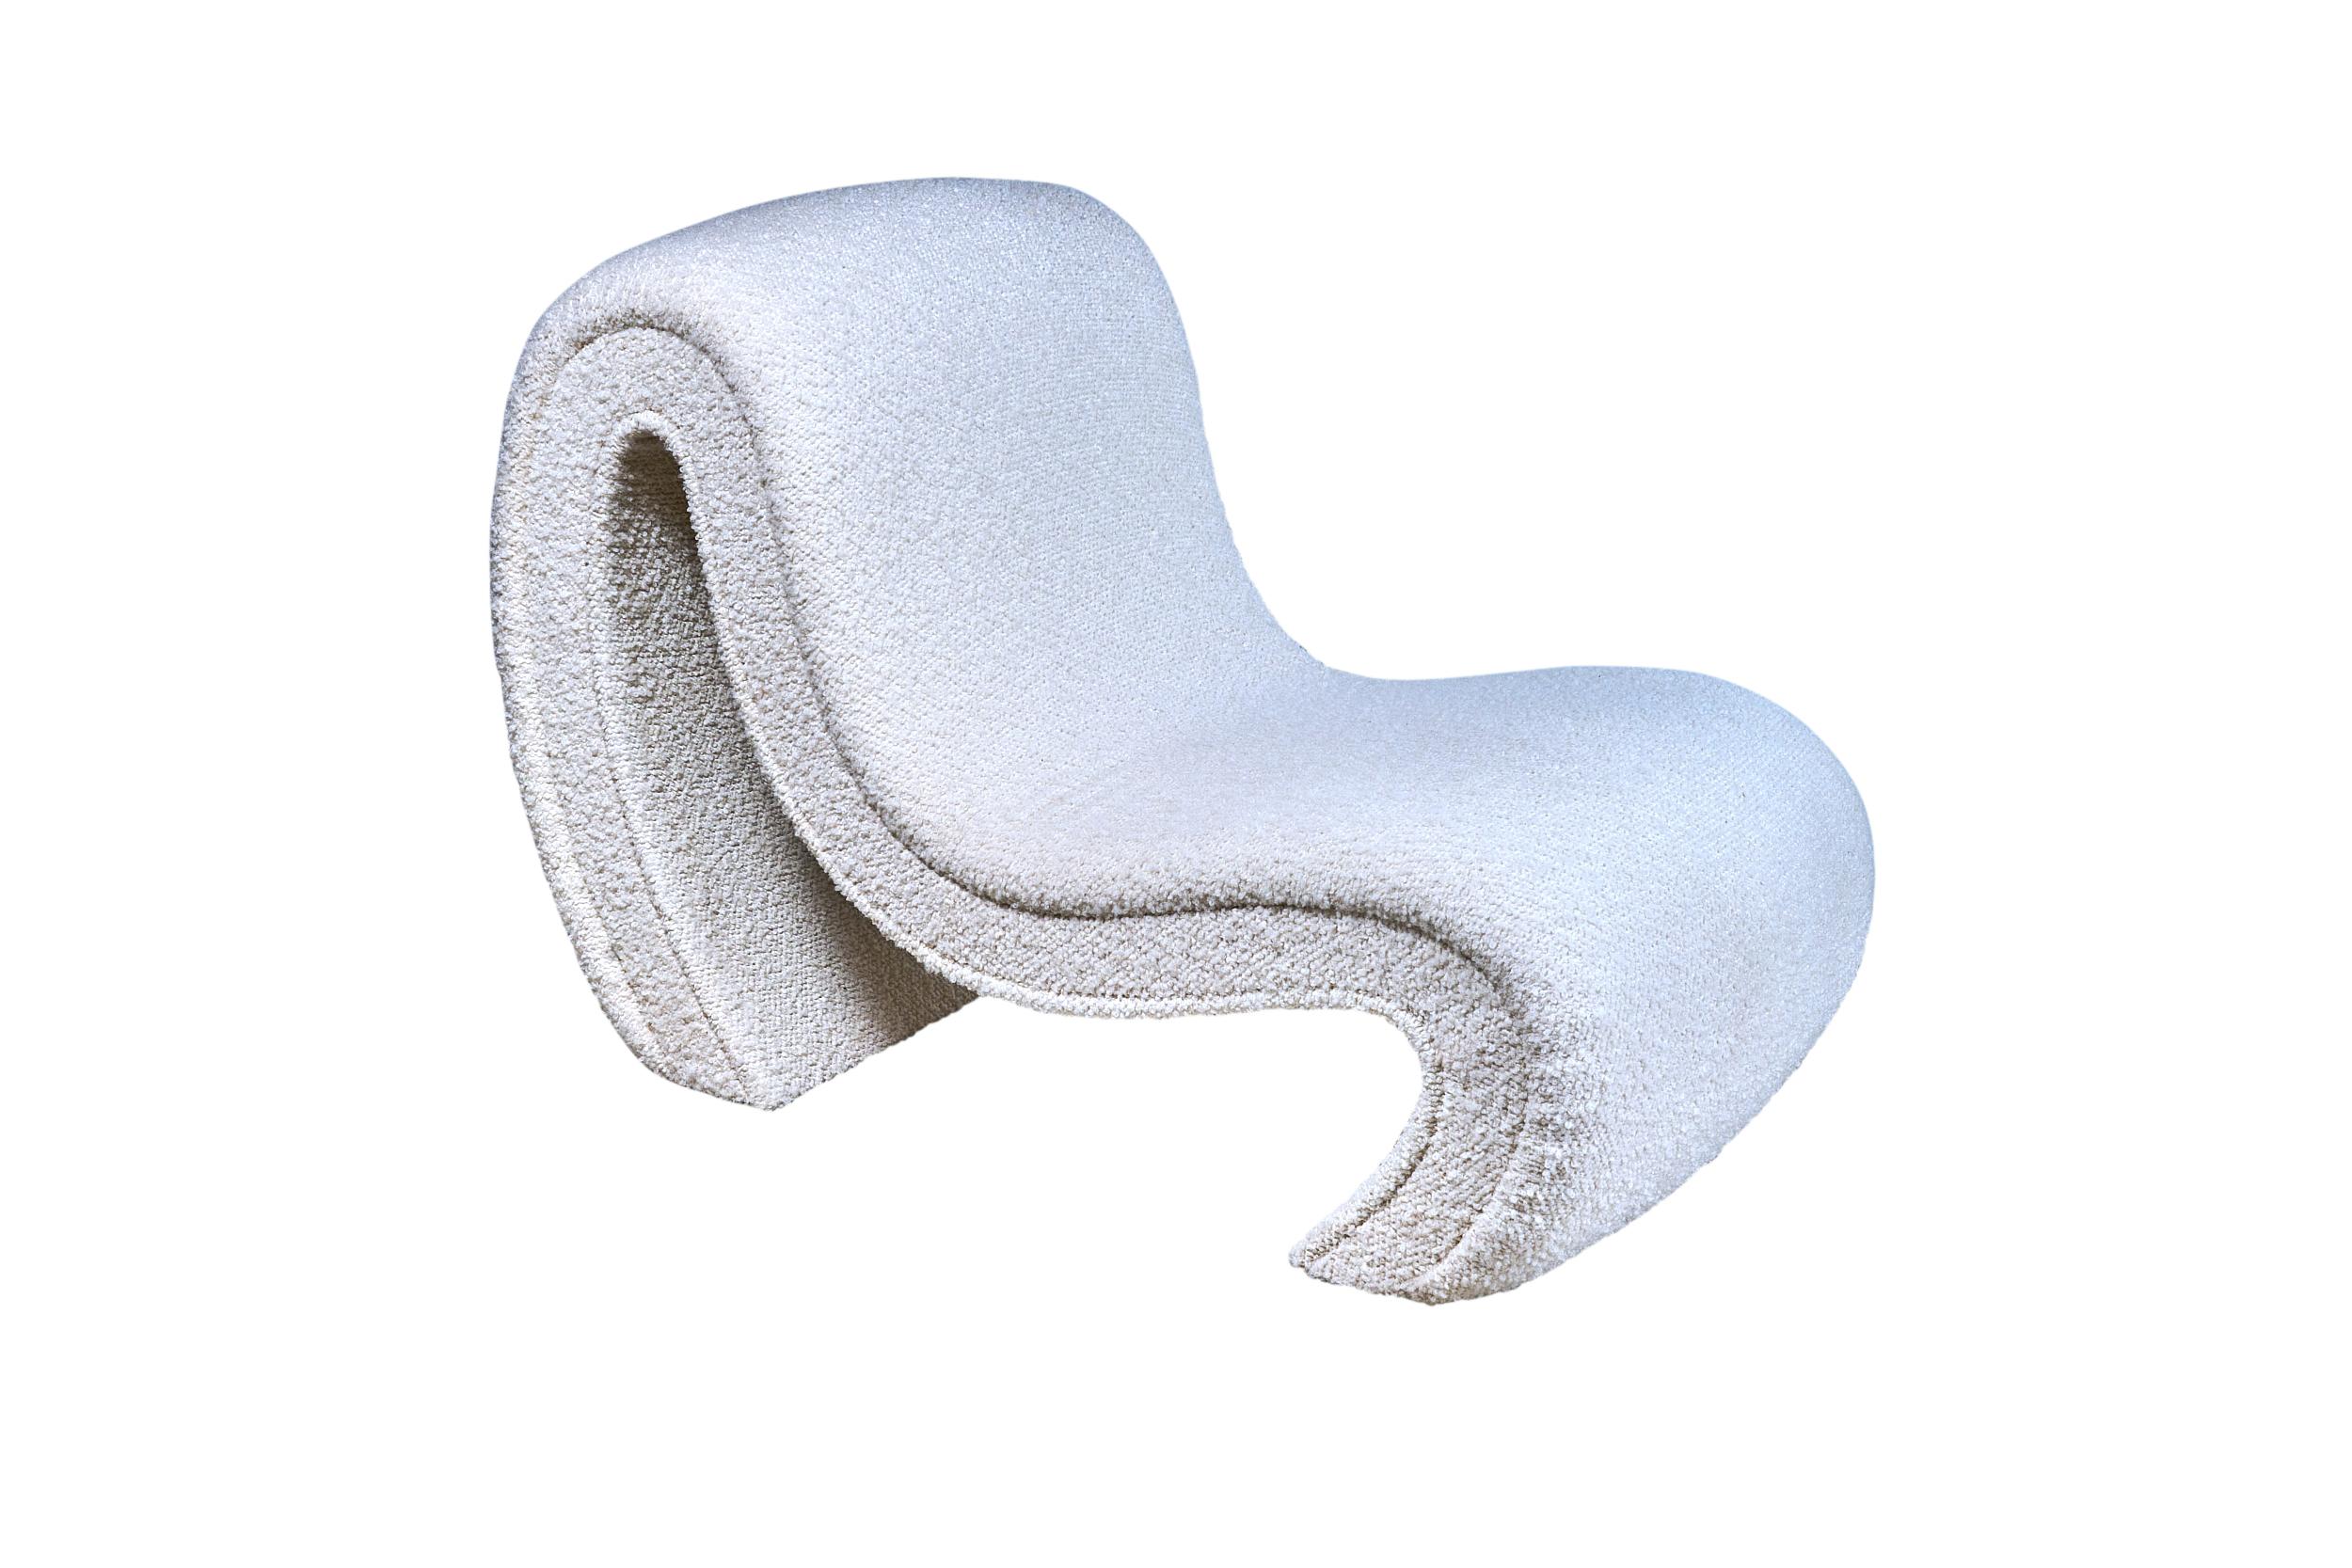 Paire de chaises tapissées italiennes de fabrication récente, en bouclette fraîche et confortable. Superbe design.

